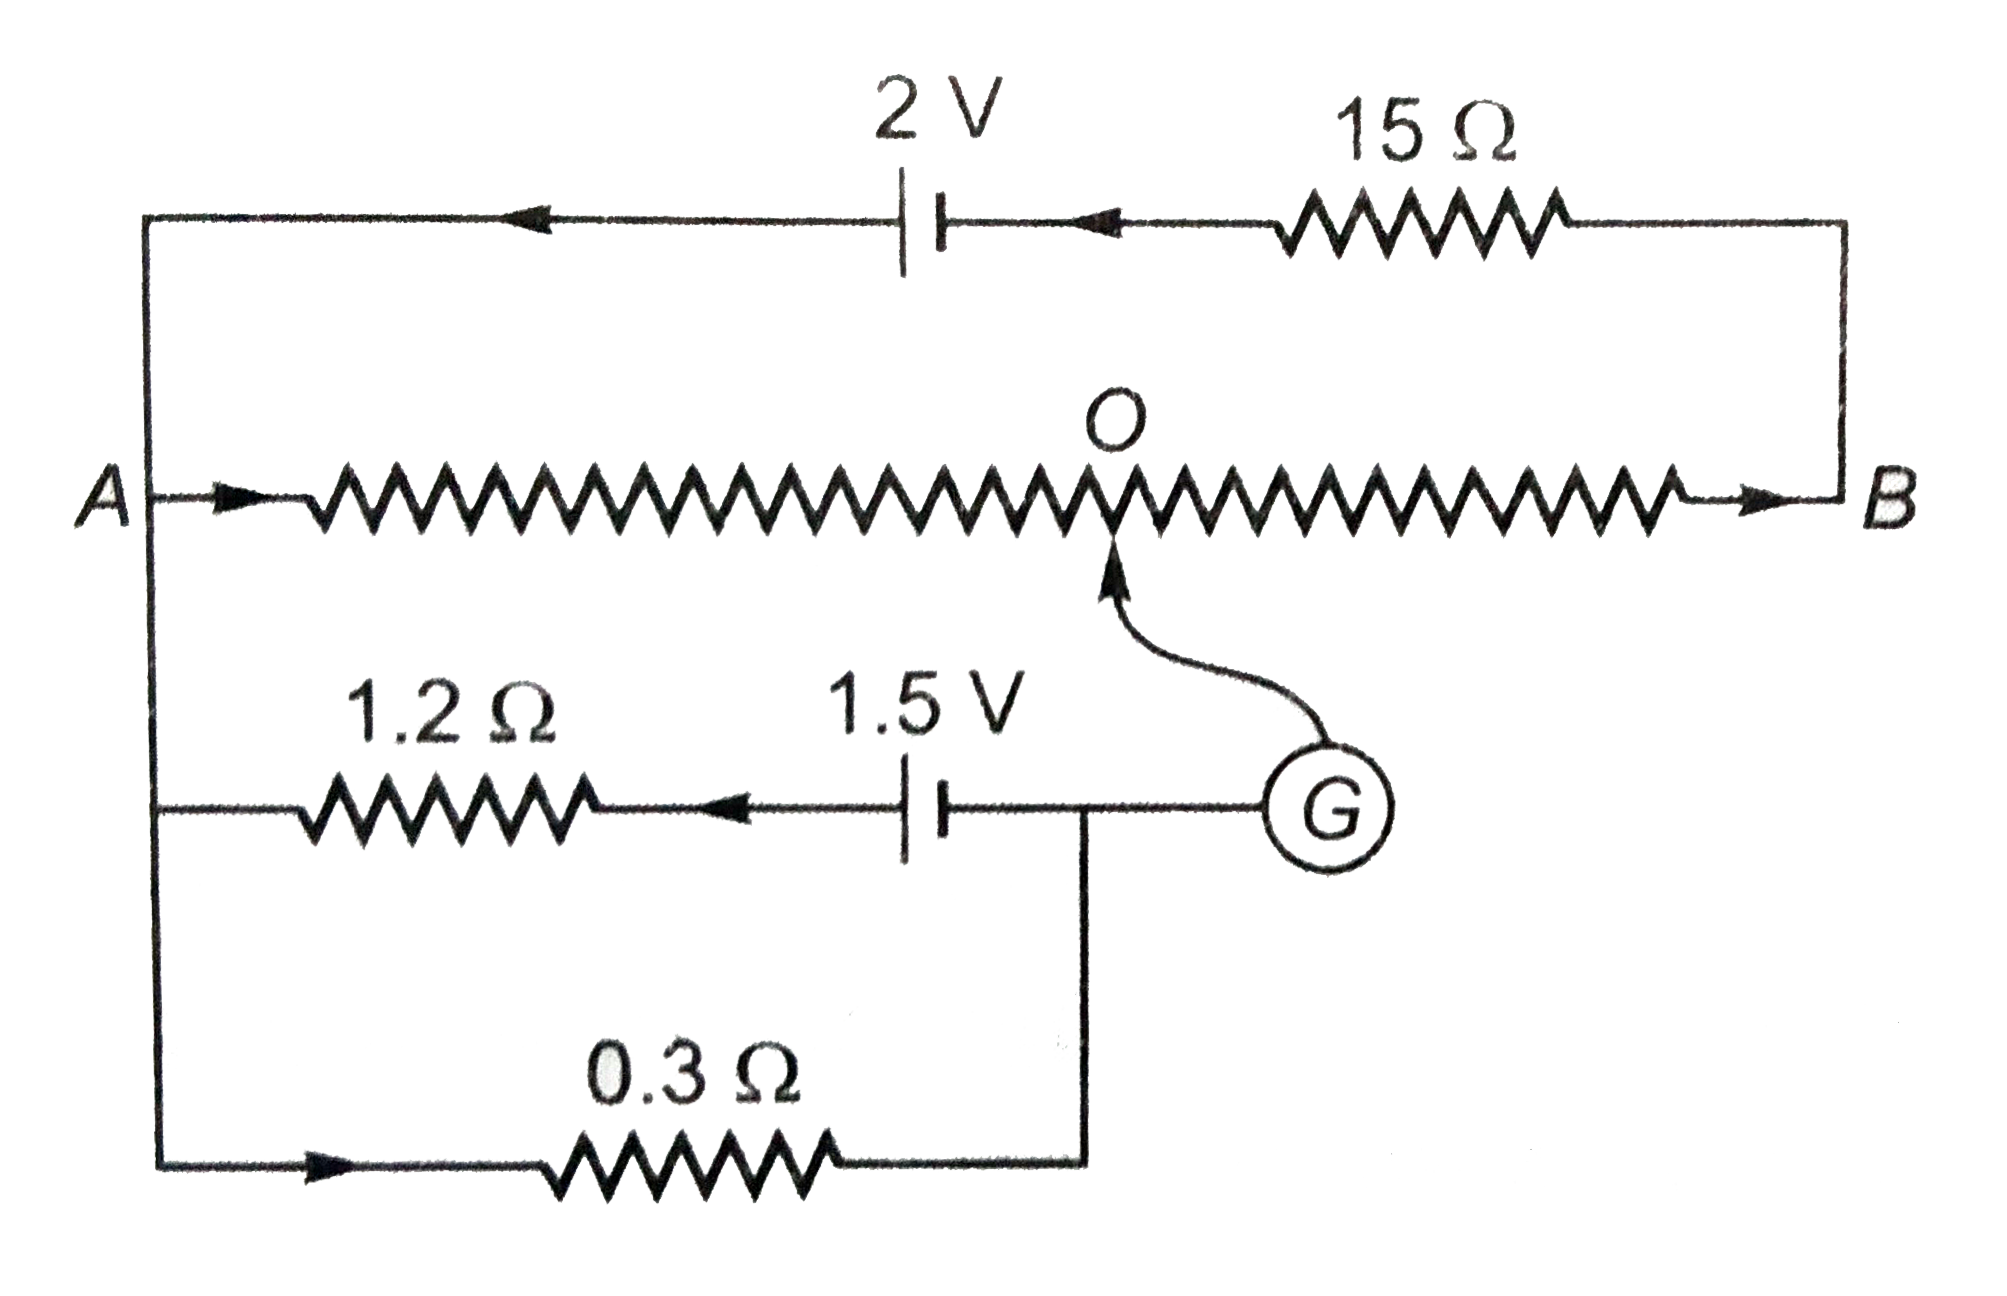 संलग्न चित्र में AB , 10Omega प्रतिरोध का 1 मीटर लम्बा , समरूप तार है । शेष आंकड़े चित्र में पदर्शित है । ज्ञात कीजिये - (i ) तार AB में विभव प्रवणता , (ii) अविक्षेप स्थिति में तार AO की लम्बाई ।